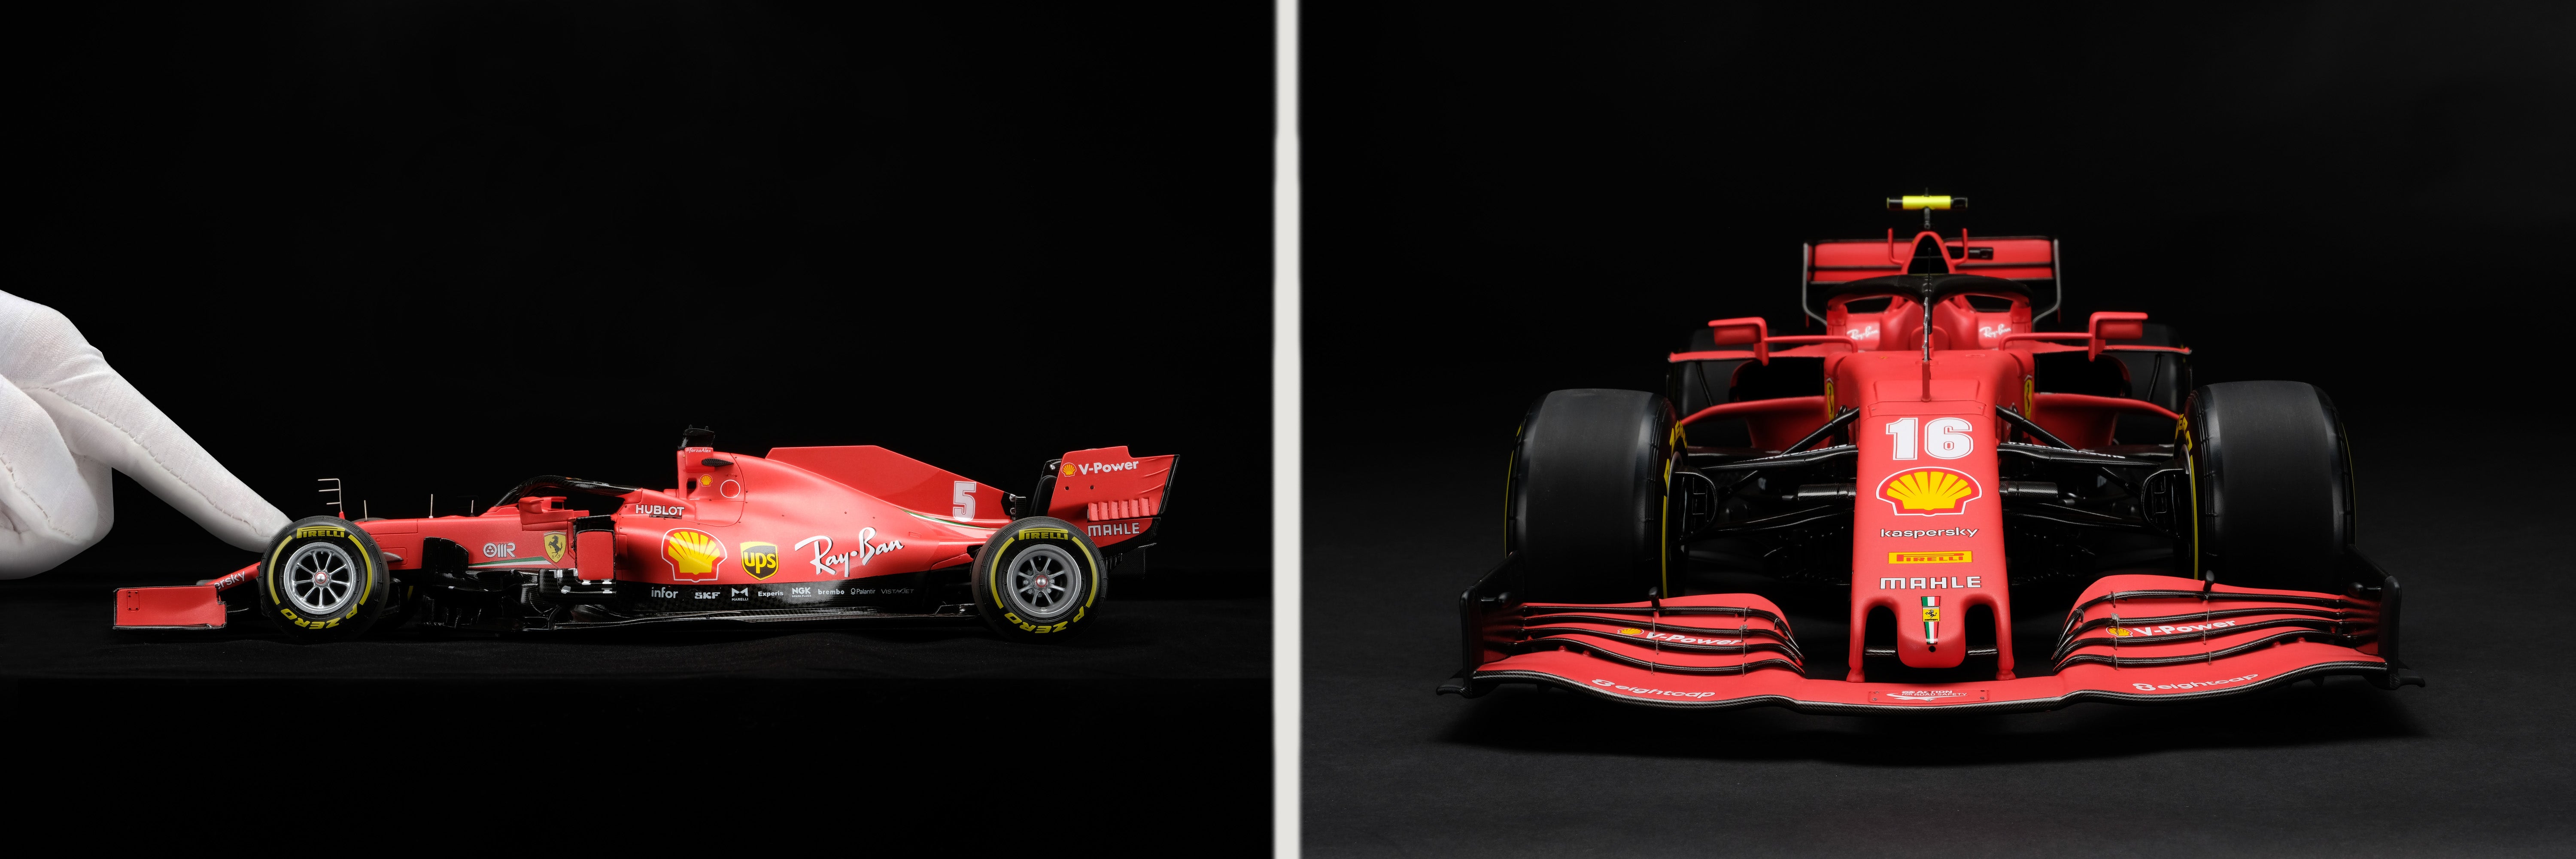 Ferrari SF1000 Celebrates the Scuderia's Upcoming 1,000th F1 Race